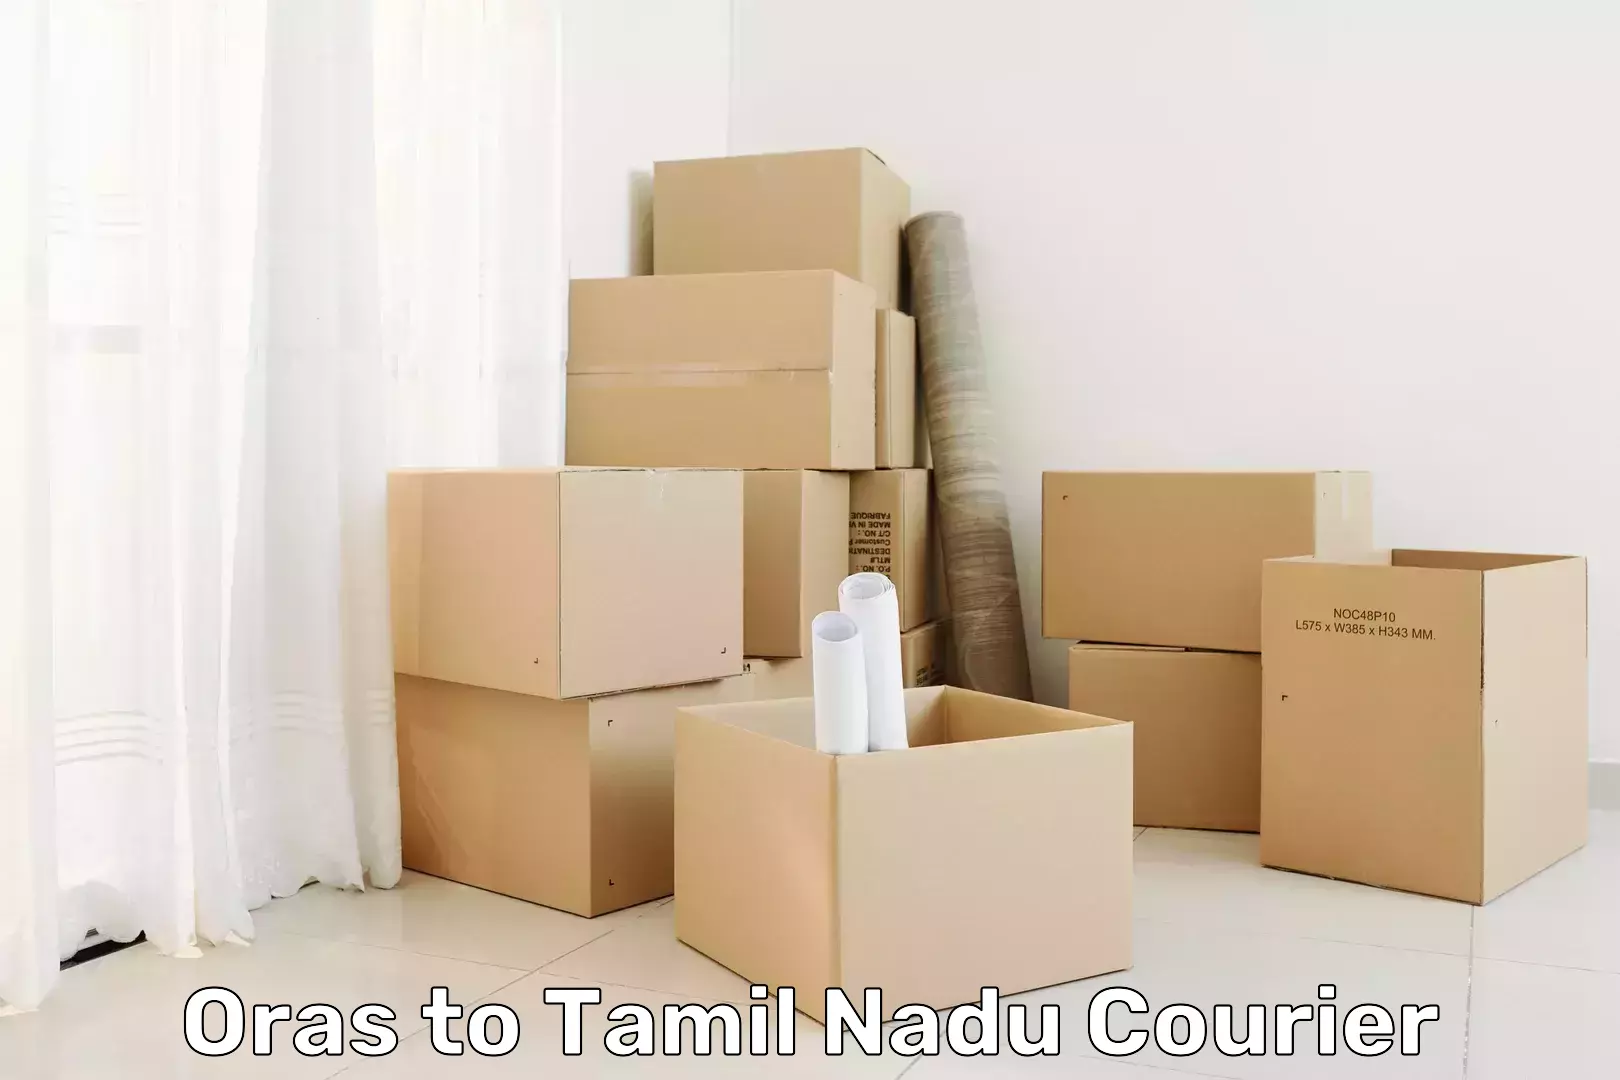 Cargo delivery service Oras to Tamil Nadu